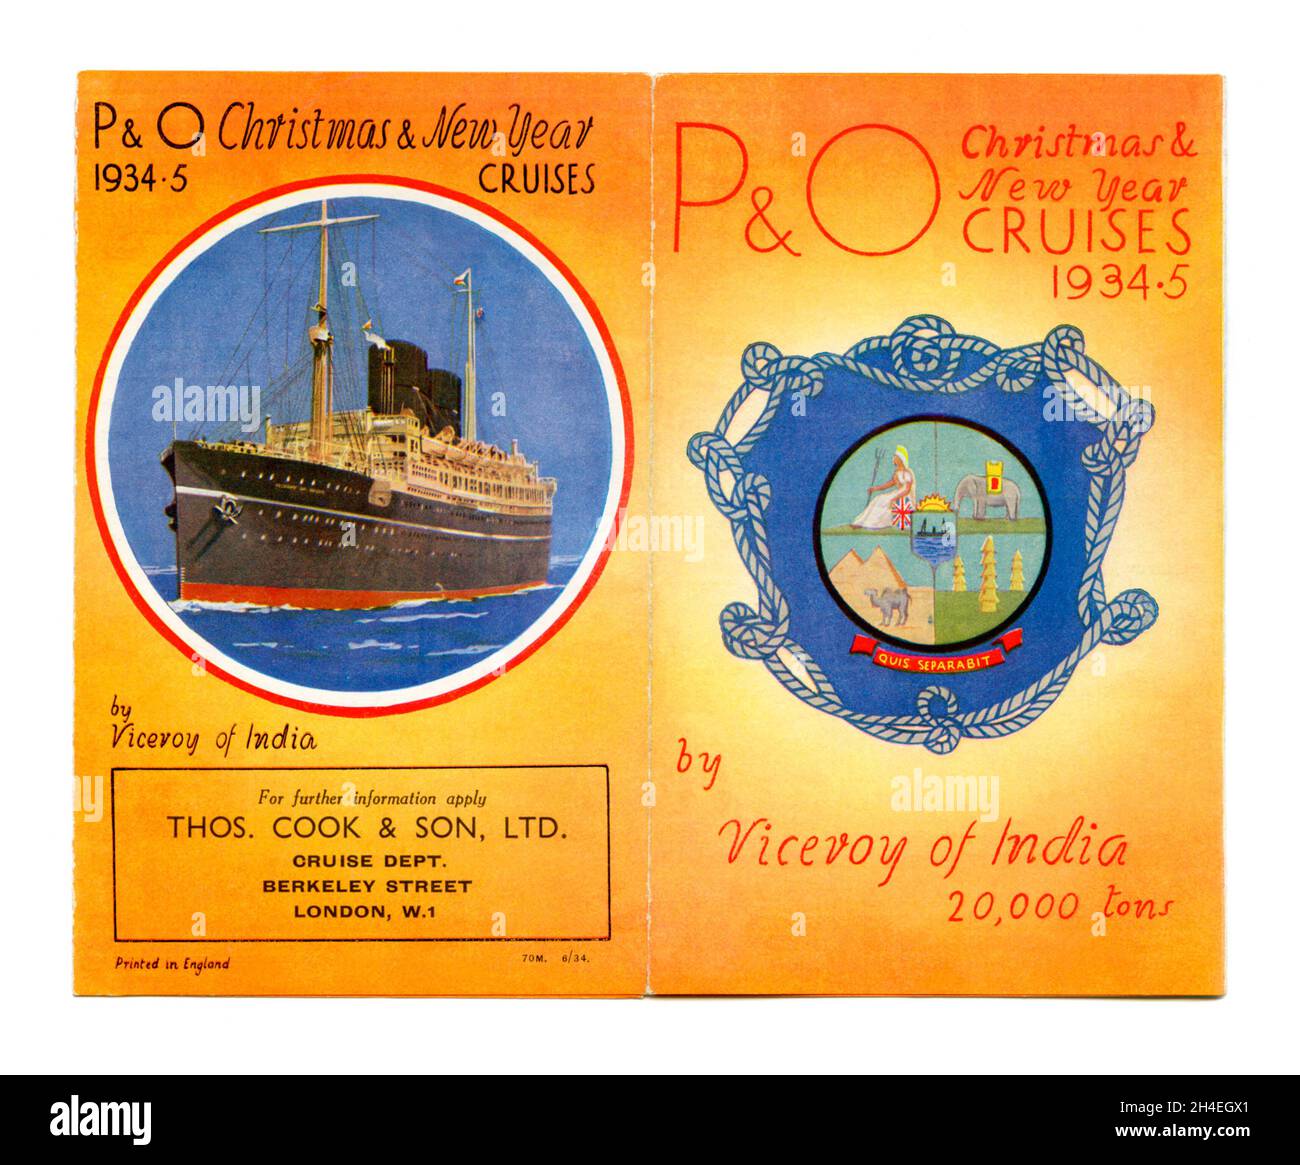 Ein Vorder- und Rückumschlag eines Werbeblatts von Thomas Cook für P&O Christmas und New Year Cruises an Bord des Vizekönigs von Indien im Jahr 1934. Der Ozeandampfer der Peninsular and Oriental Steam Navigation Company (P&O) war ein britisches Royal Mail Ship auf der Strecke Tilbury–Bombay. Die Unterkunft an Bord galt nach den Standards der Ära als luxuriös und beinhaltete ein Hallenbad – eine alte Grafik aus den 1930er Jahren. Stockfoto